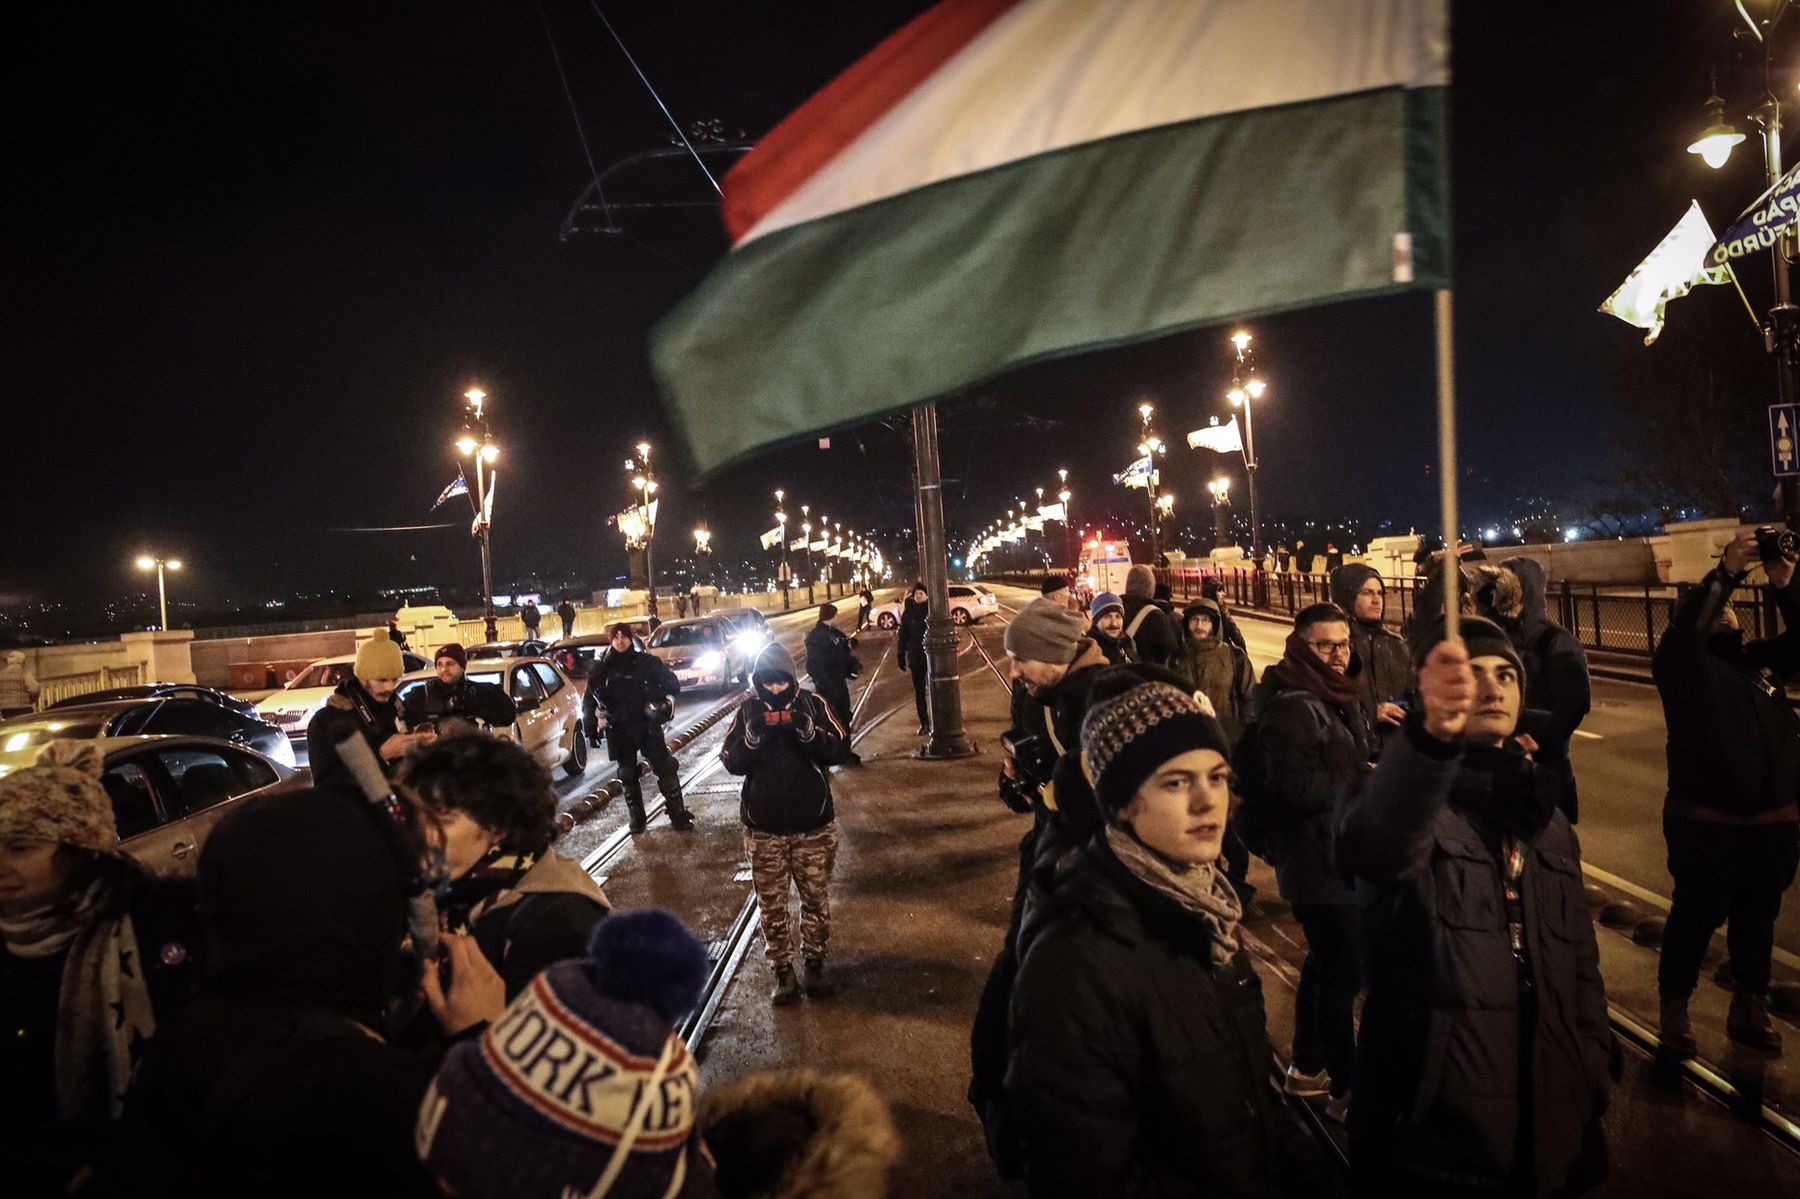 Éjfél után a tüntetők elkezdtek szétszéledni: 100-150 ember a Kossuth téren maradt még egy darabig, egy nagyobb csoport pedig a Várba indult. A Sándor-palota előtt még egy darabig skandáltak, aztán továbbmentek és a Halászbástyánál elénekelték a Himnuszt. 